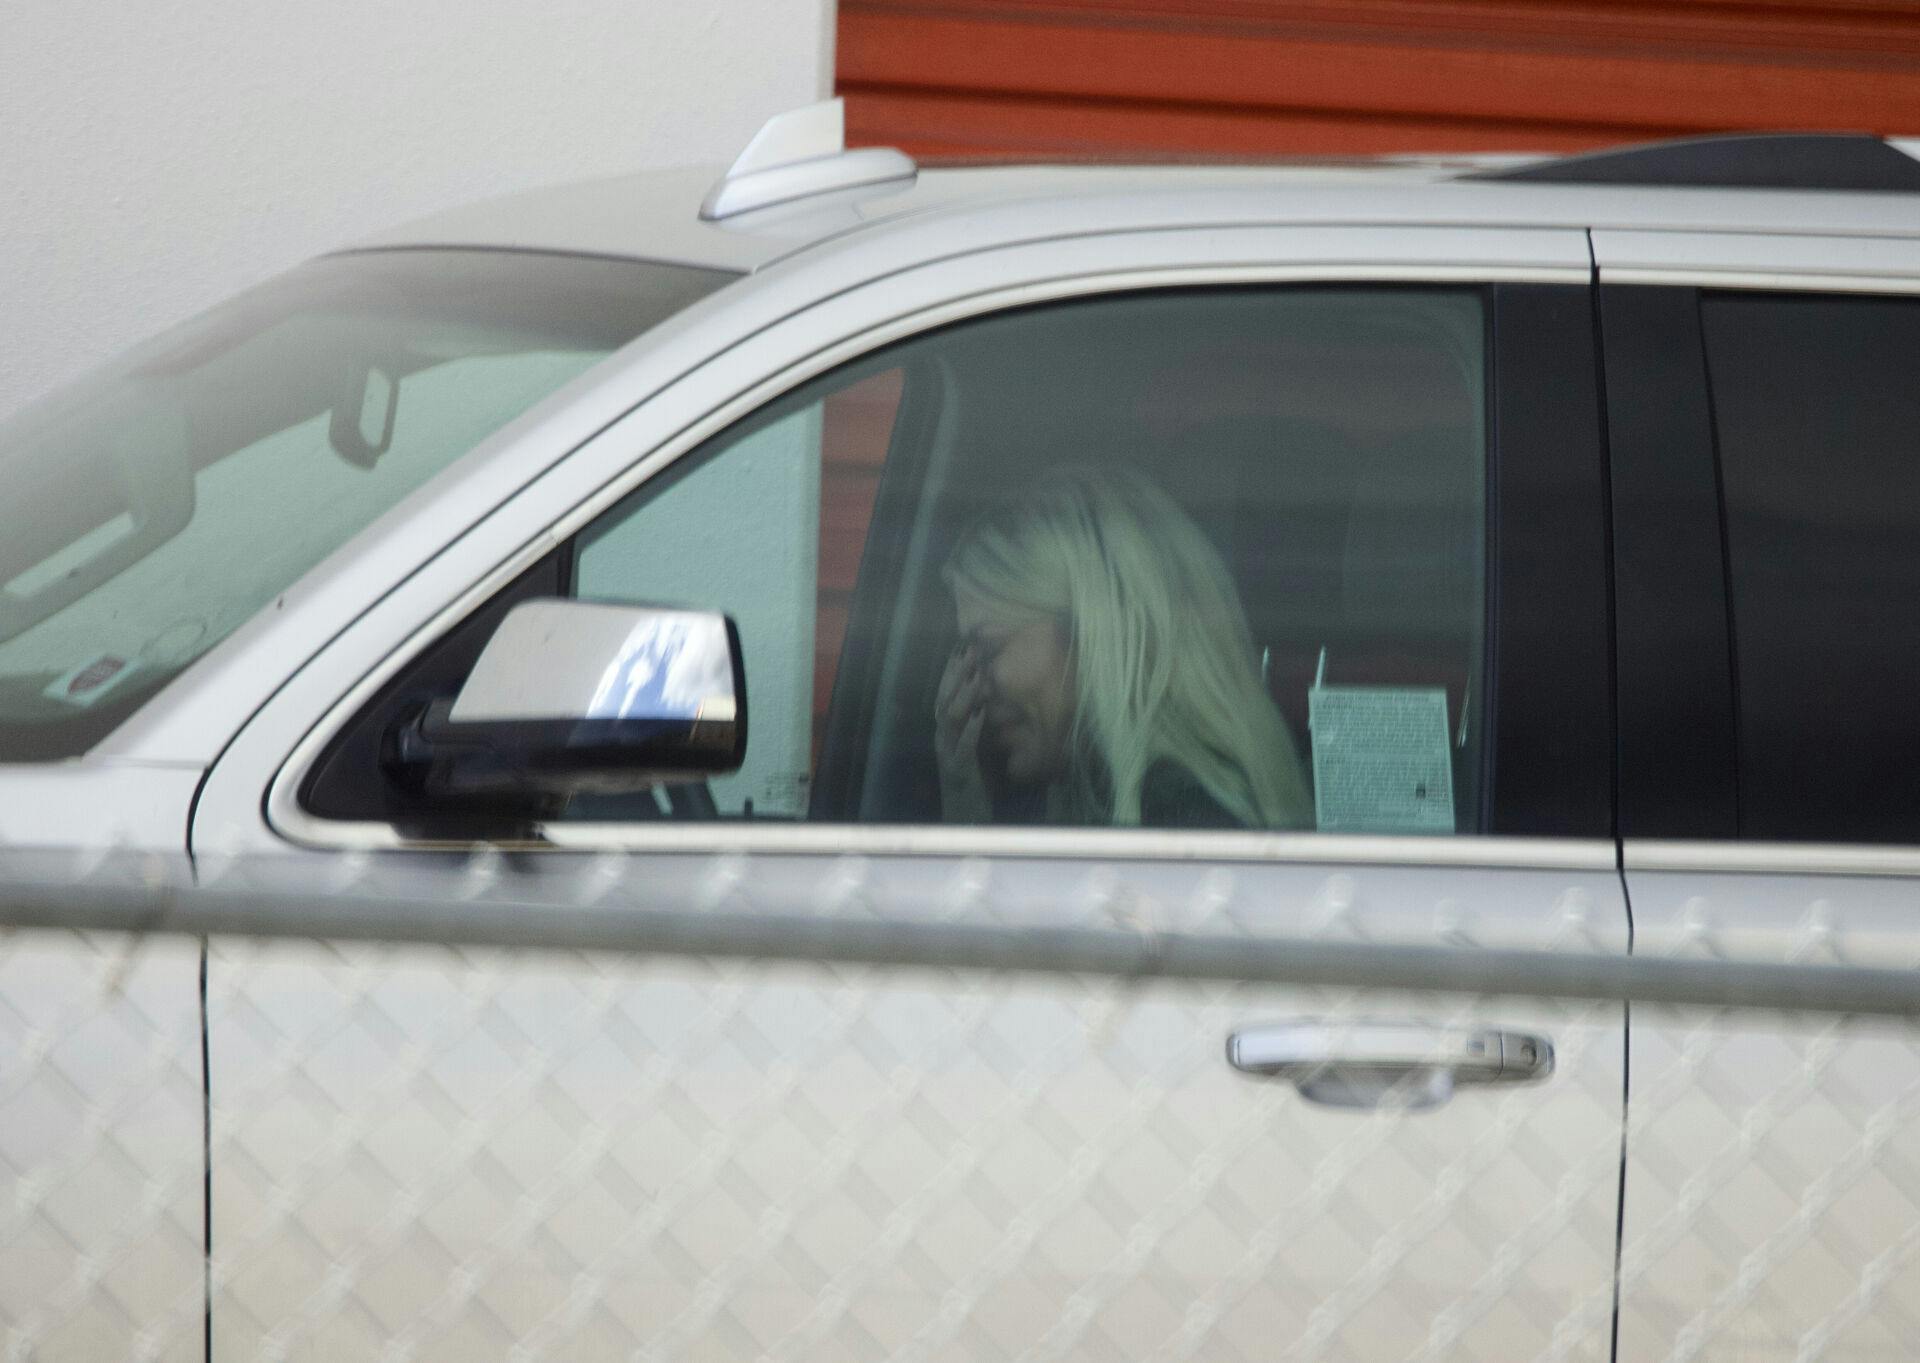 Tori Spelling er i tårer efter sammenstødet med sin ex-mand Dean McDermott. Her sidder hun i bilen foran lageret, hvor deres ejendomme er opmagasineret.